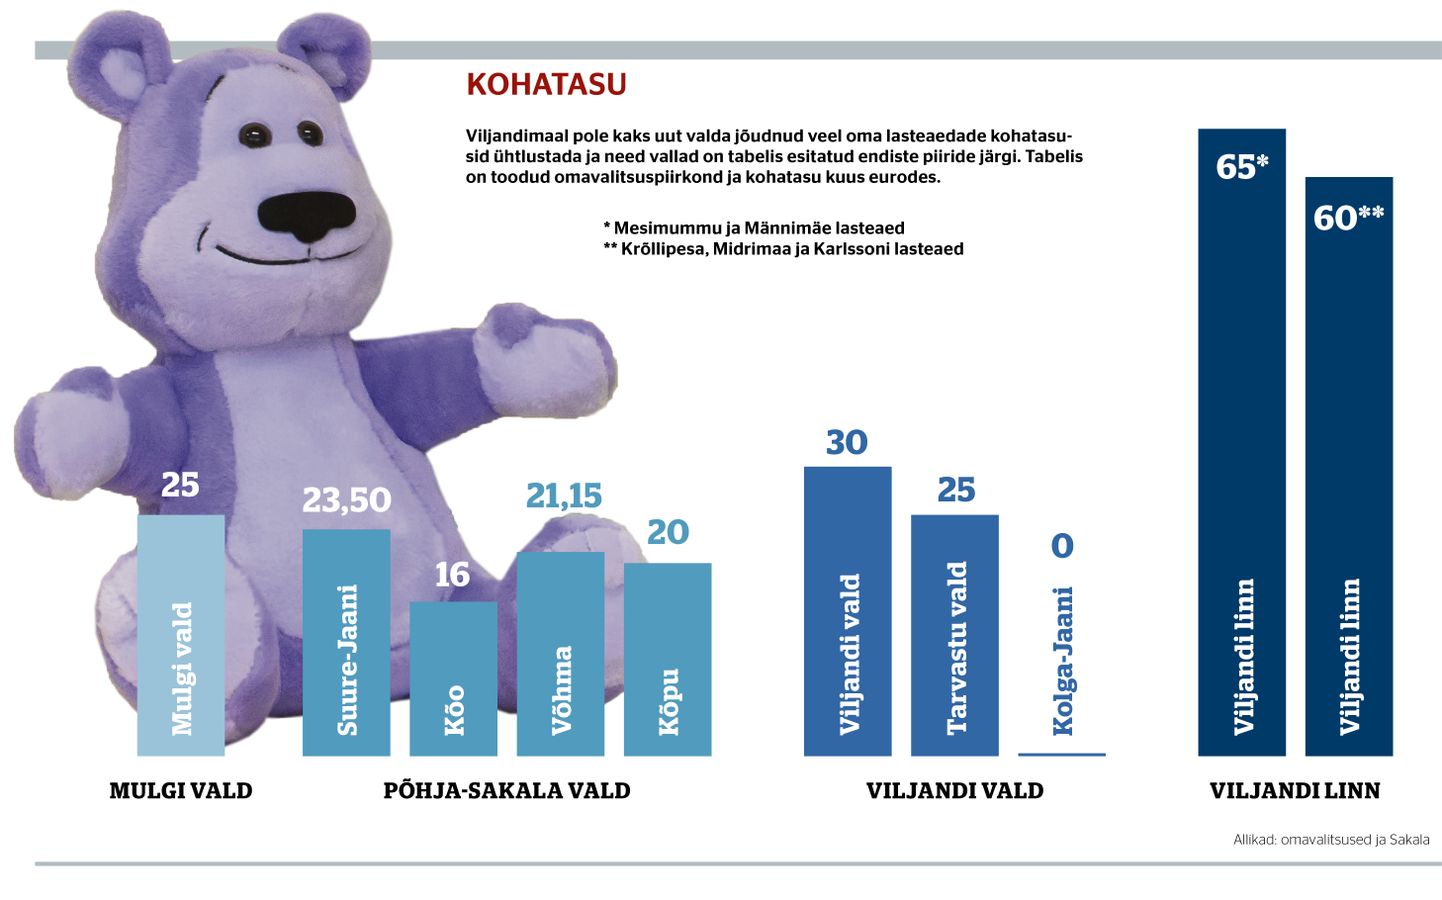 Illustratsioonina on kasutatud Lastekaitse Liidu programmi "Kiusamisest vaba lasteaed ja kool" sümbolit Sõber Karu, mis ei oma lasteaiamaksu tõusuga seost.